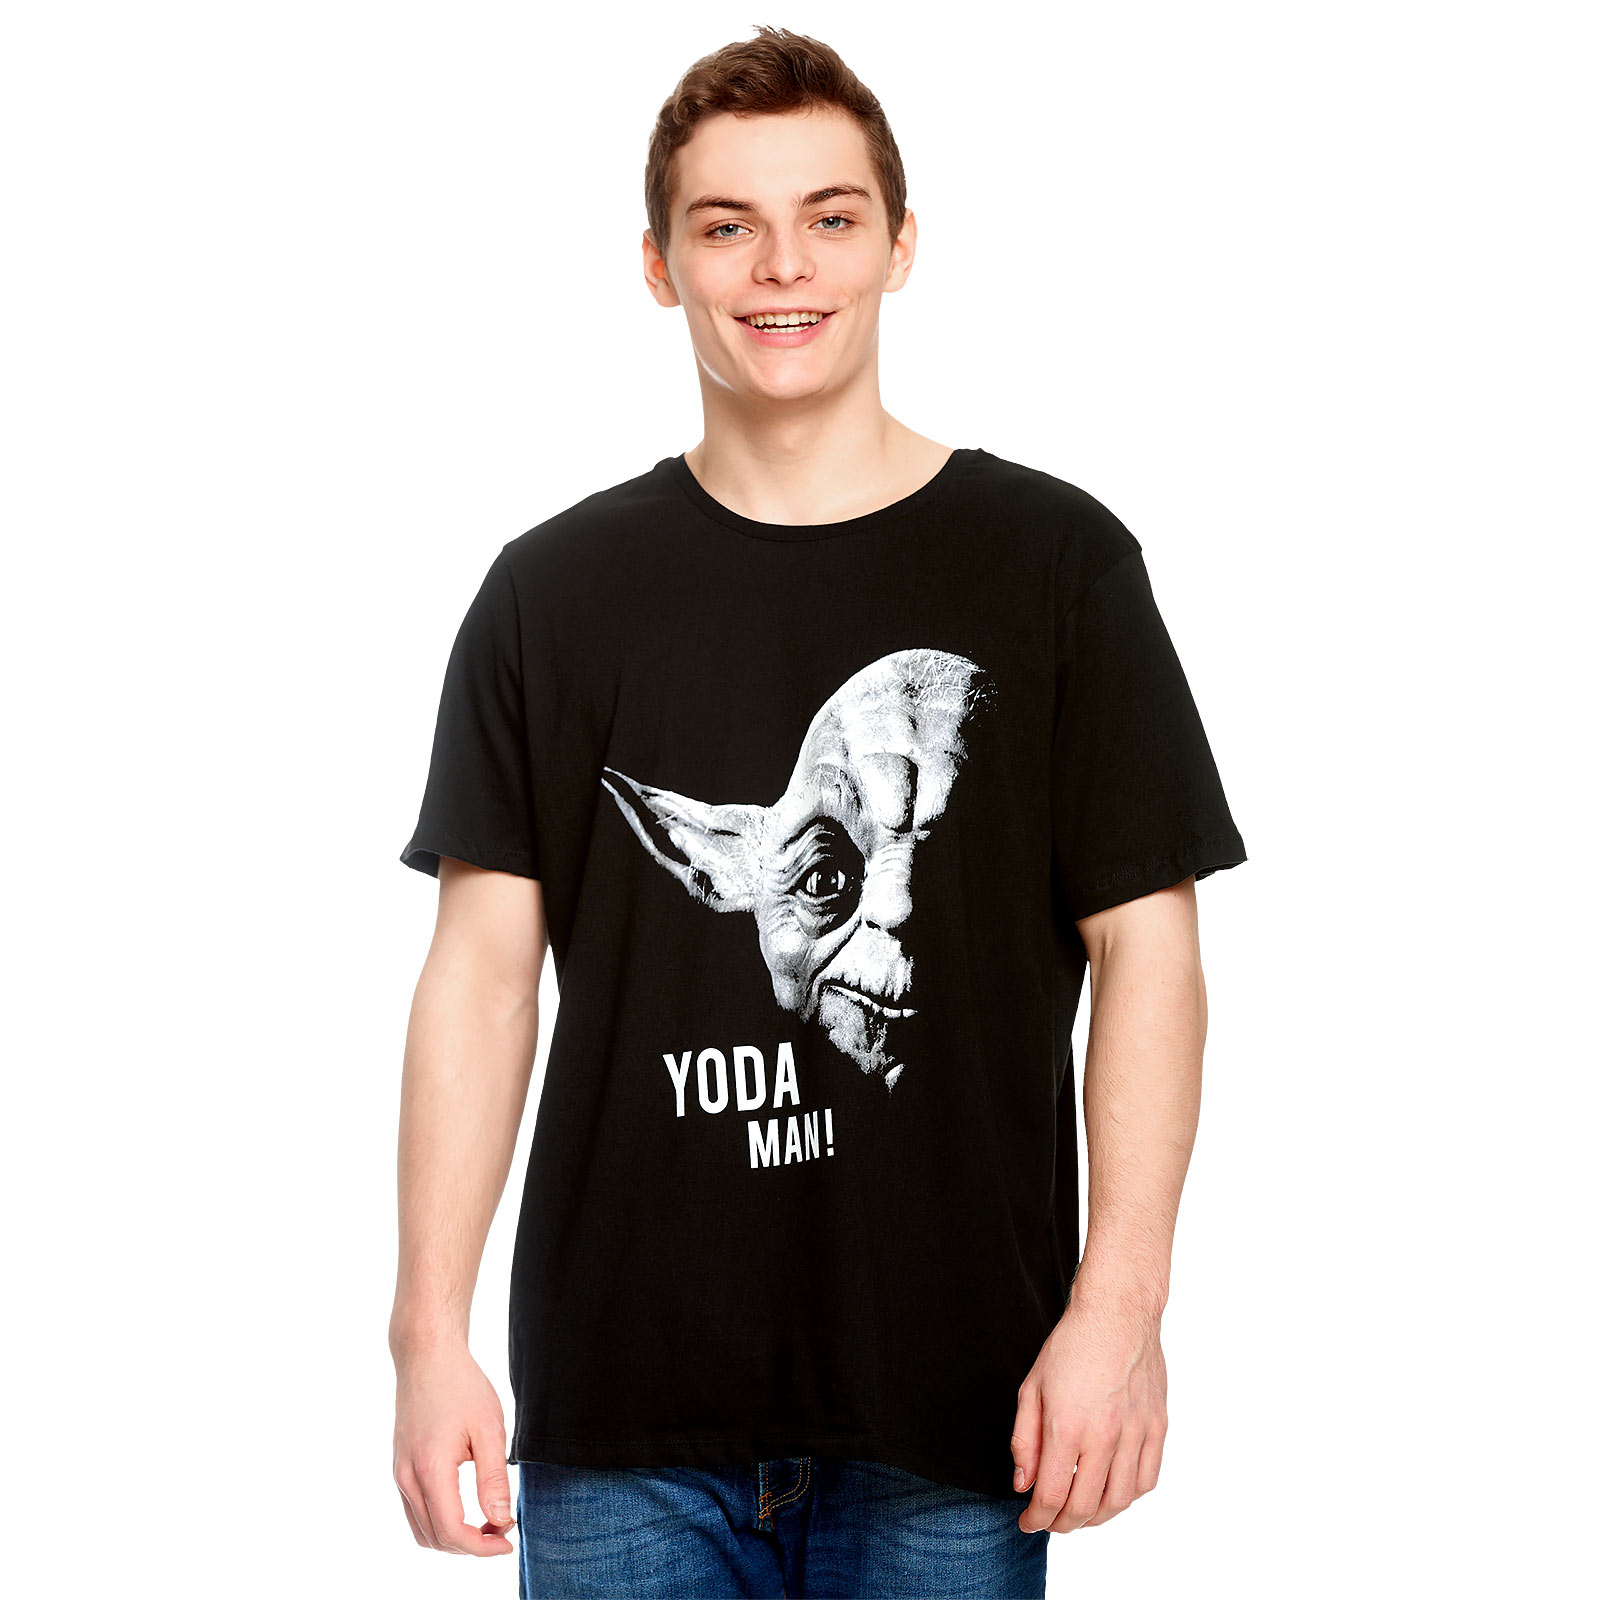 Star Wars - Yoda Man! T-Shirt schwarz